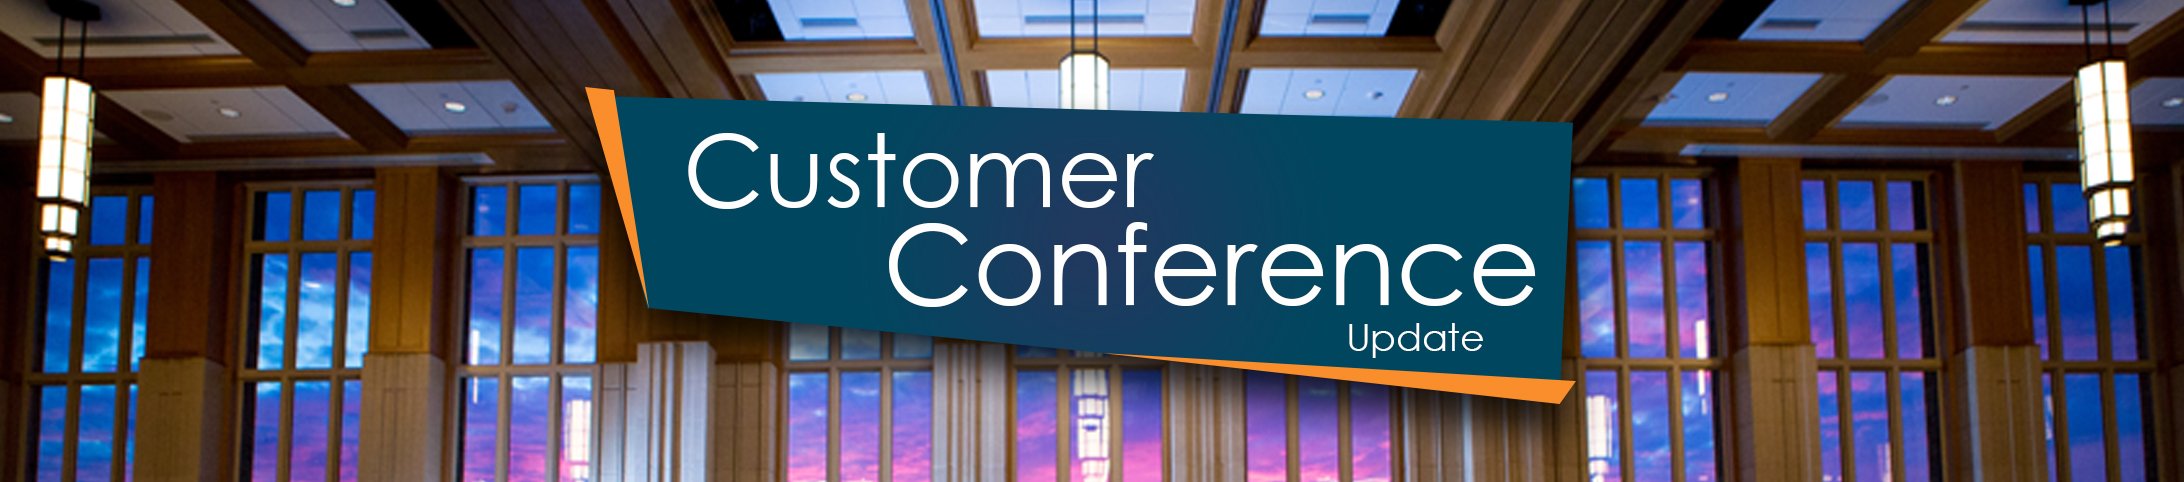 Customer Conference 2021 Website Header